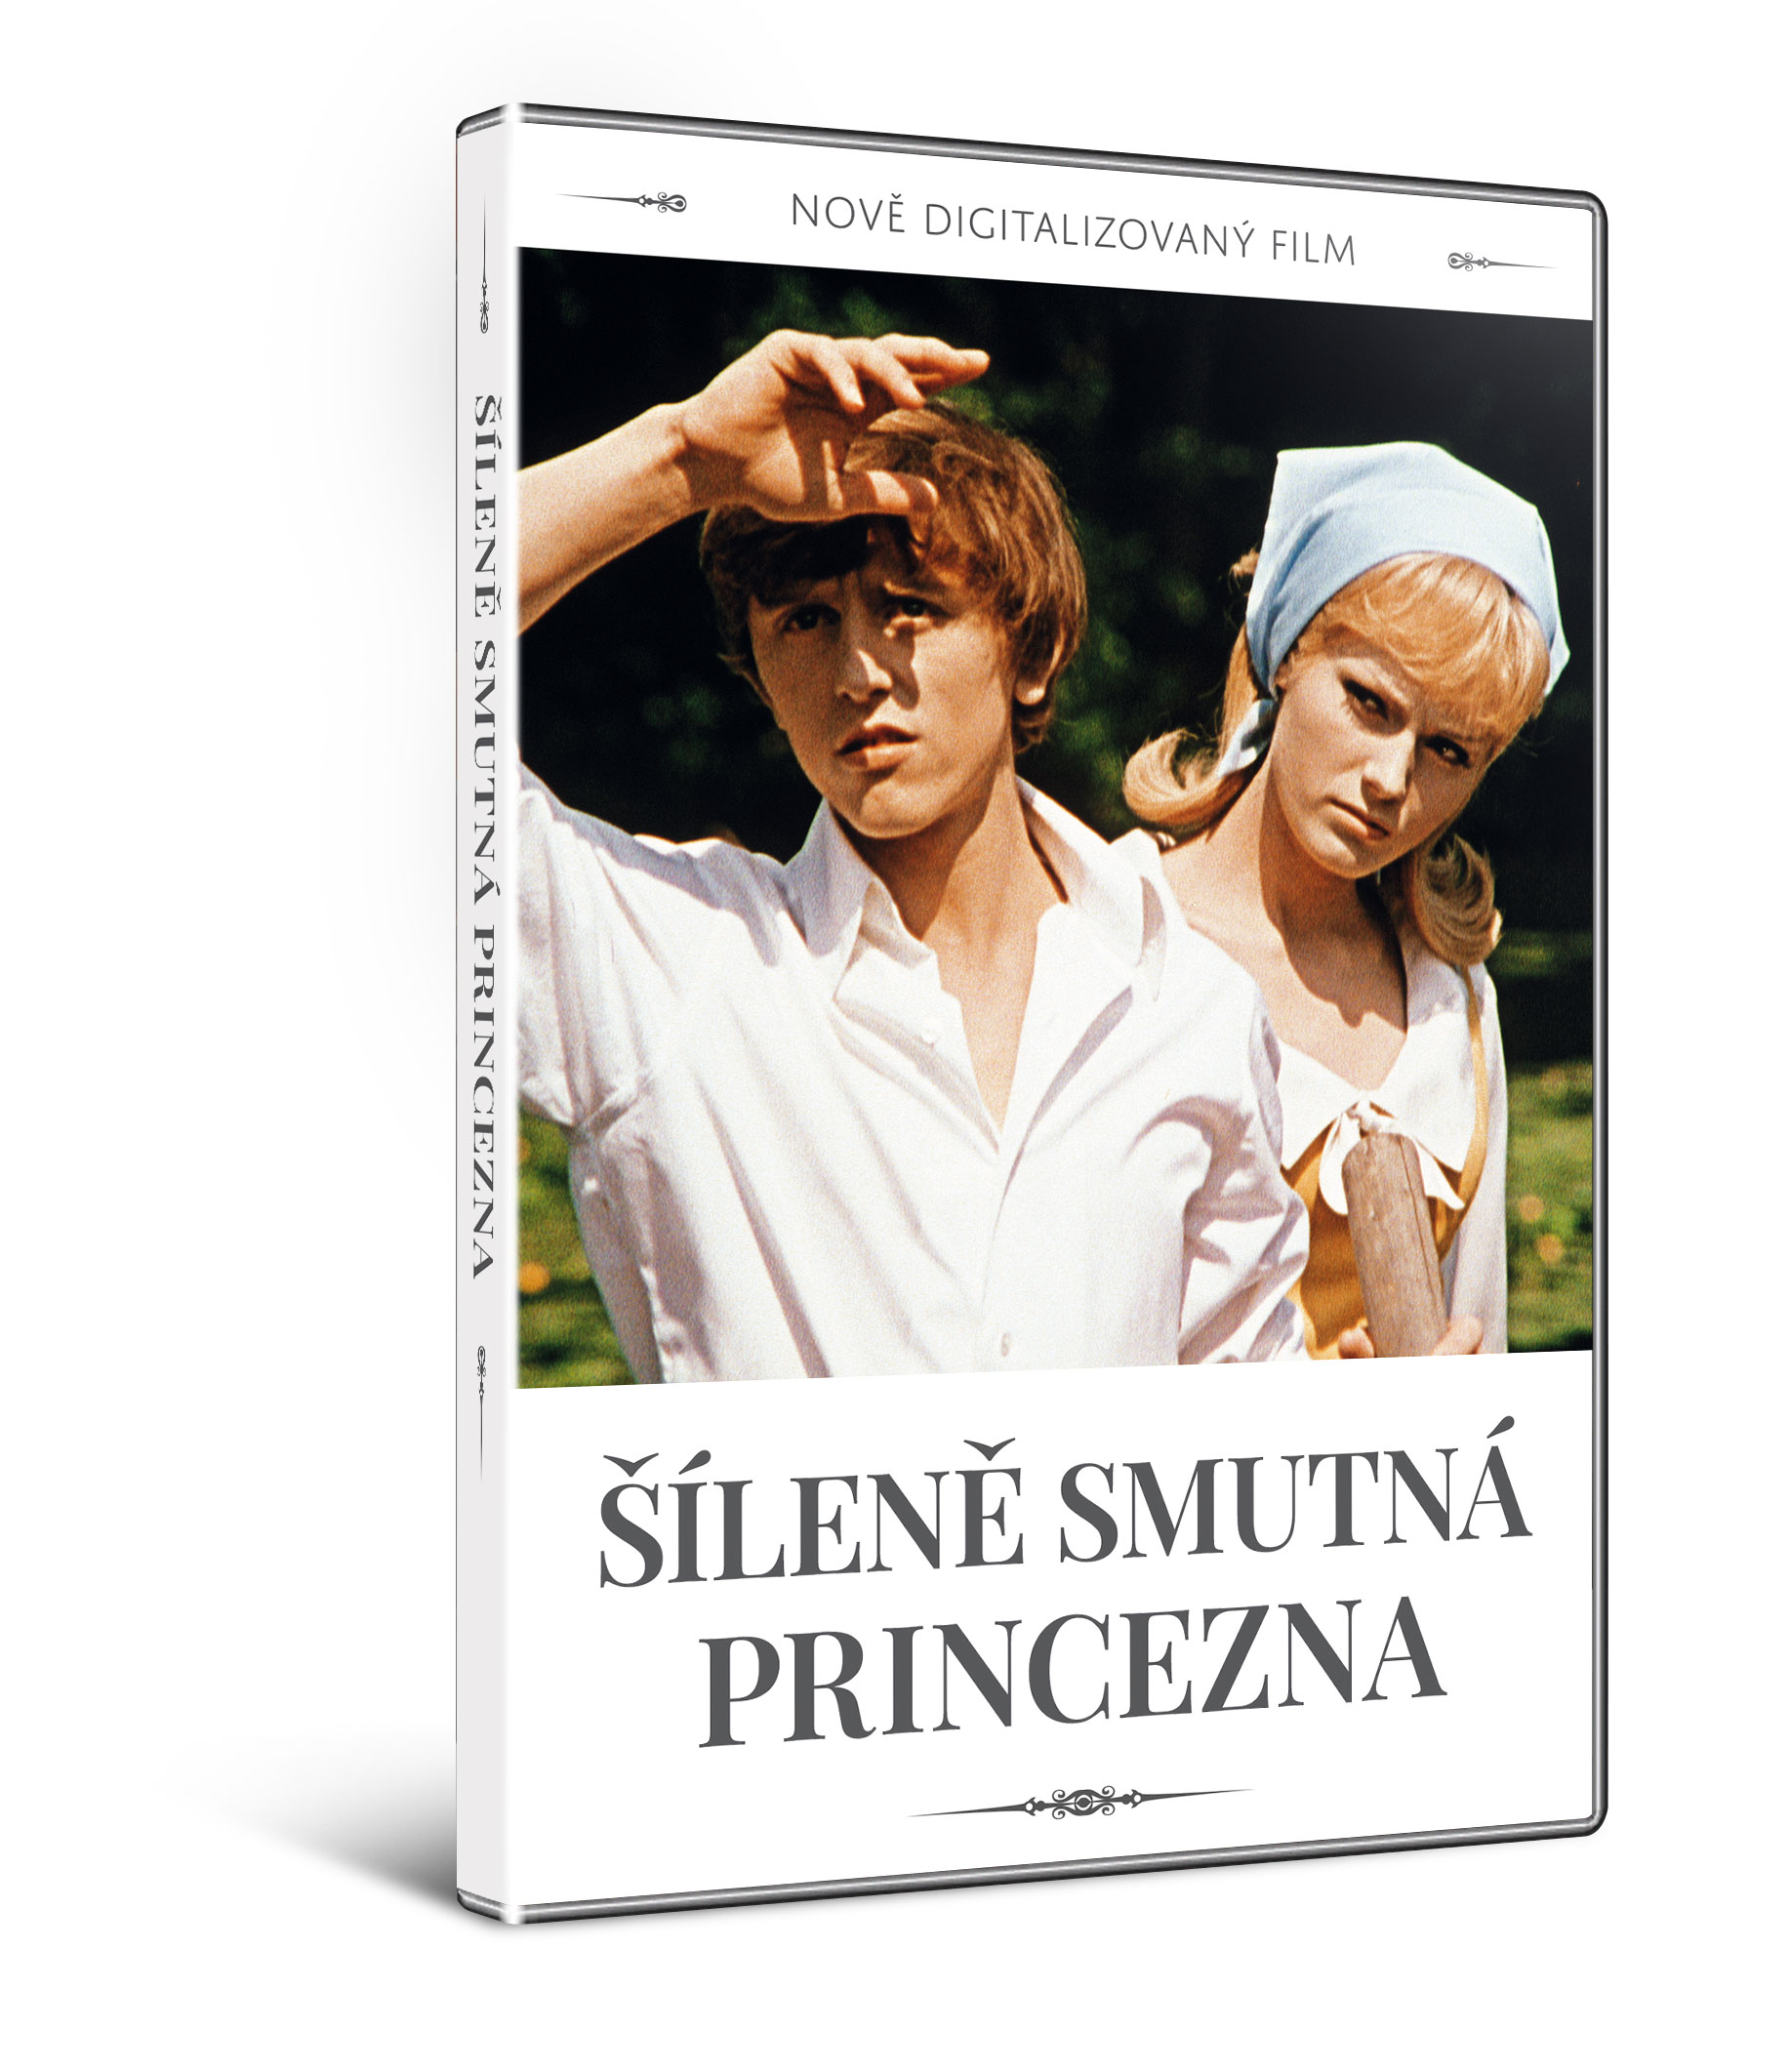 CD Shop - FILM SILENE SMUTNA PRINCEZNA (NOVE DIGITALIZOVANY FILM)